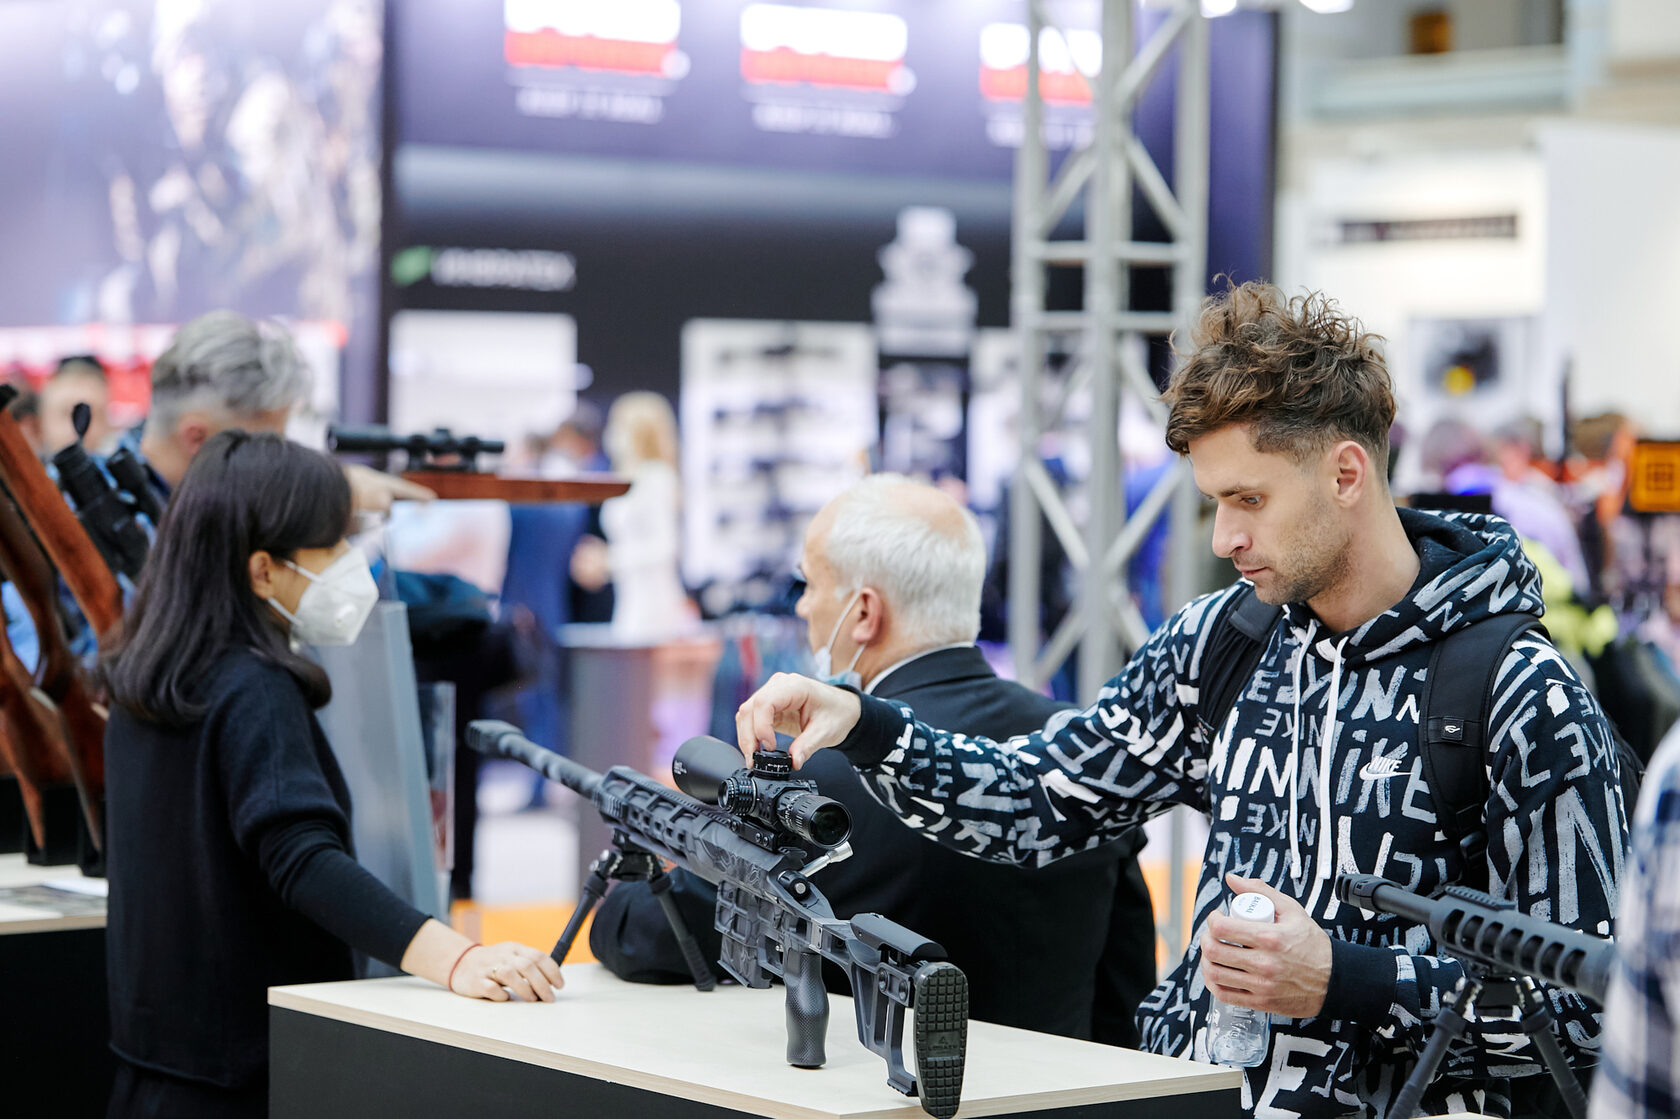 Выставка оружия и товаров для охоты «ORЁLEXPO 2022»